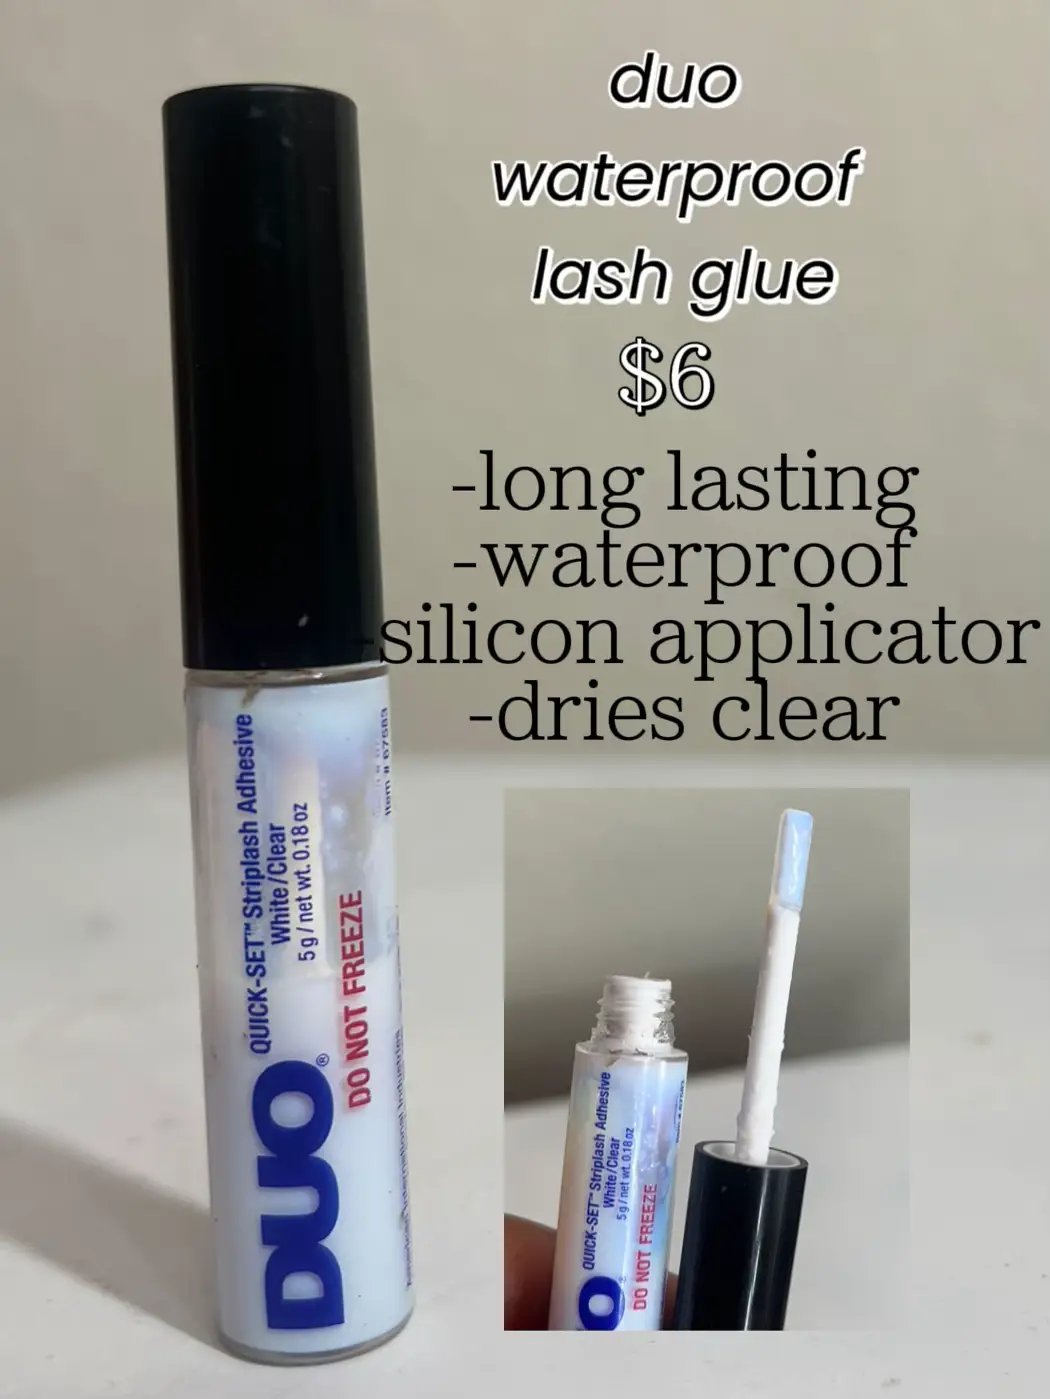  A bottle of Duo waterproof lash glue